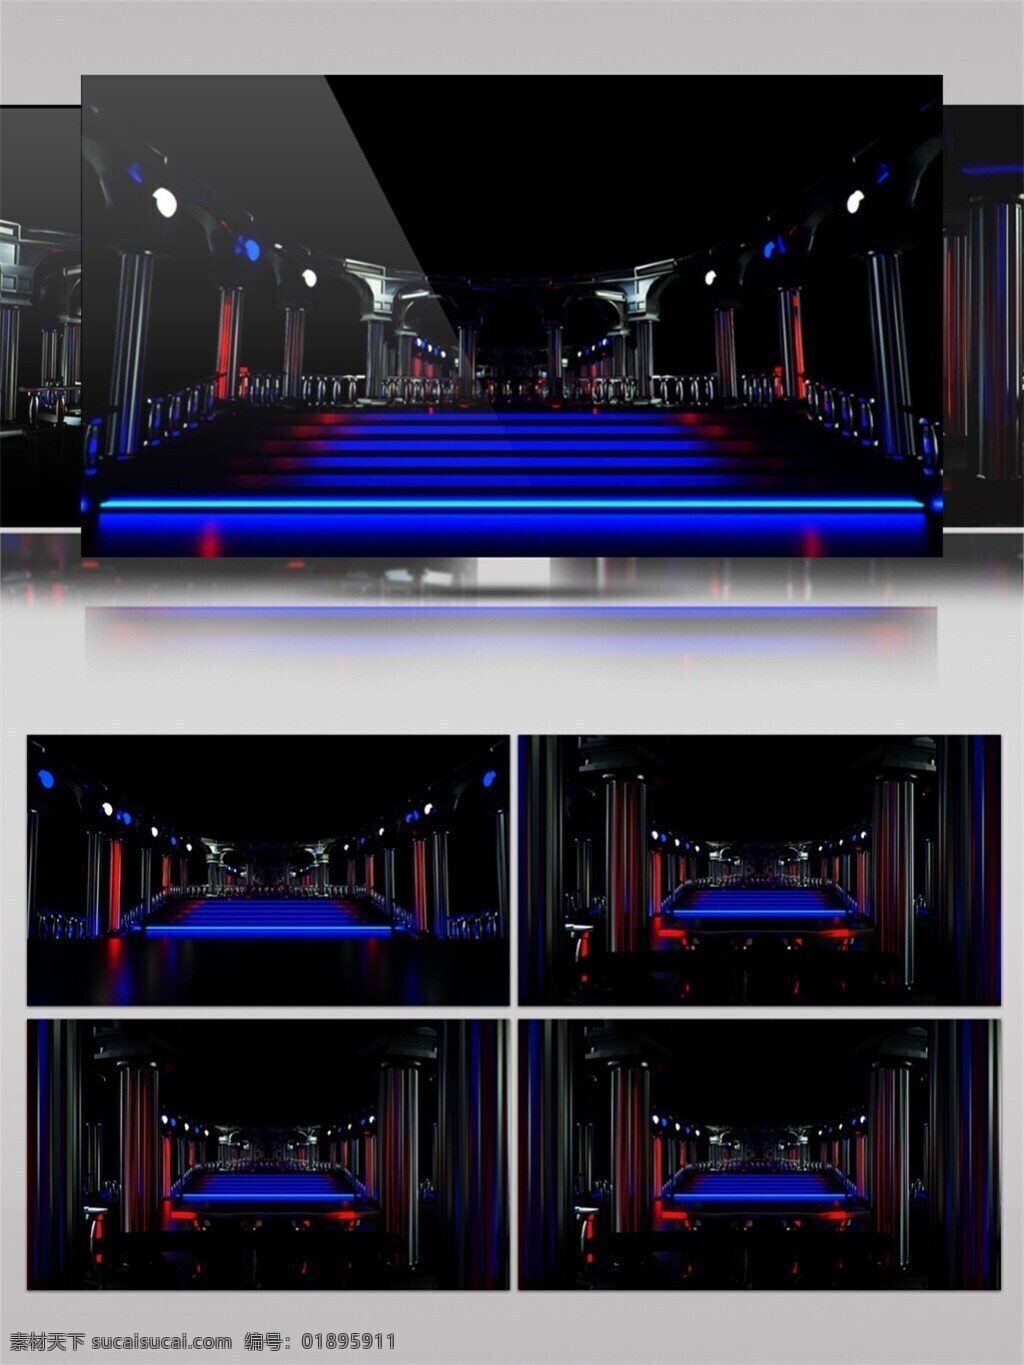 蓝光 动感 擂台 视频 光束 酒吧 酒吧舞台 蓝色 舞台 渲染灯光